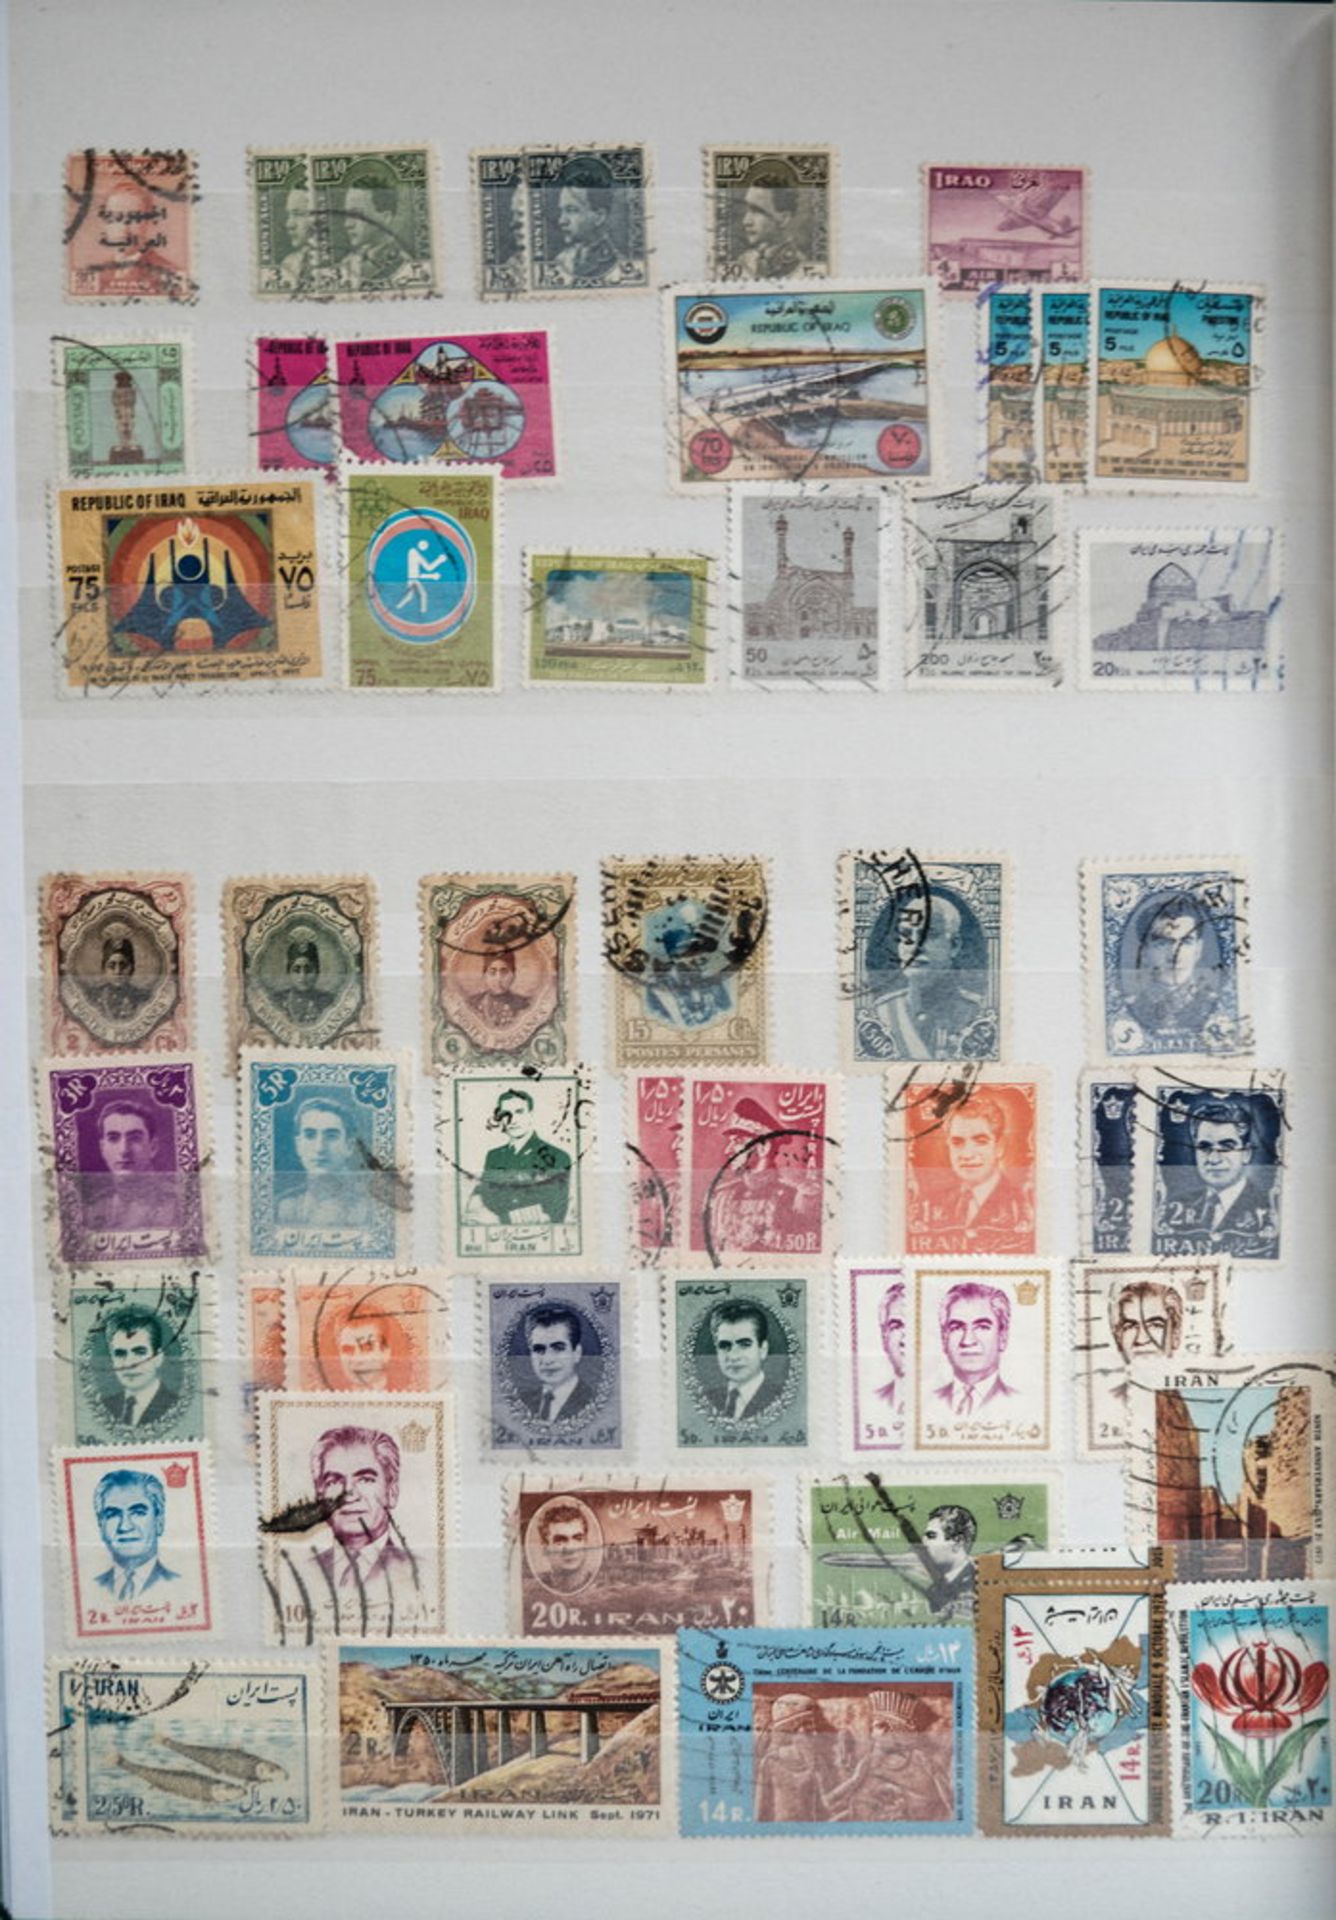 Sammlung Arabien und Vorderasien/Israel. Dazu drei Briefmarken - Steckkarten Ägypten.>/de> - Bild 4 aus 7